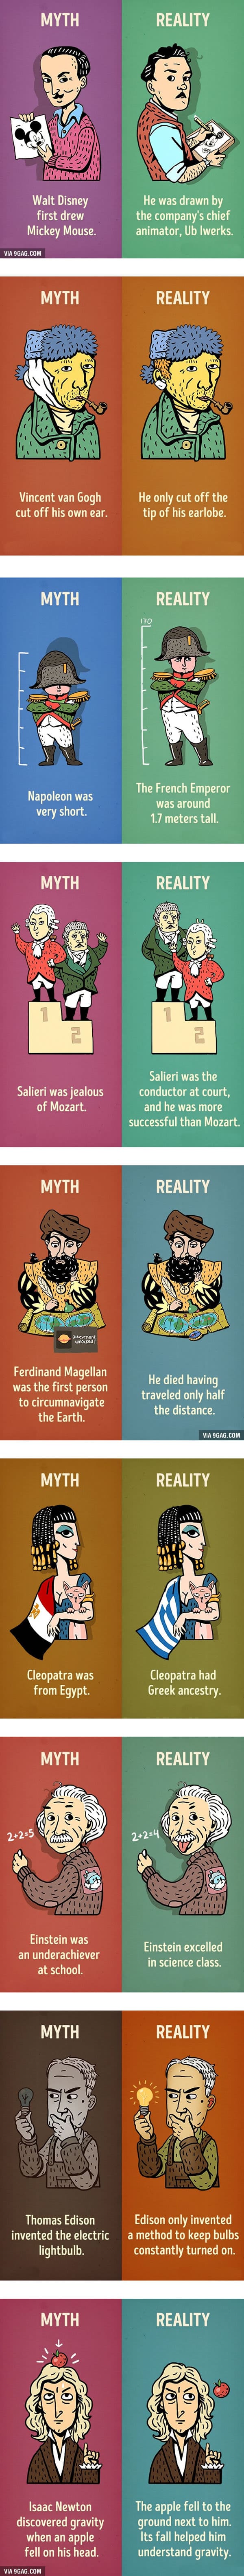 9-historical-myths